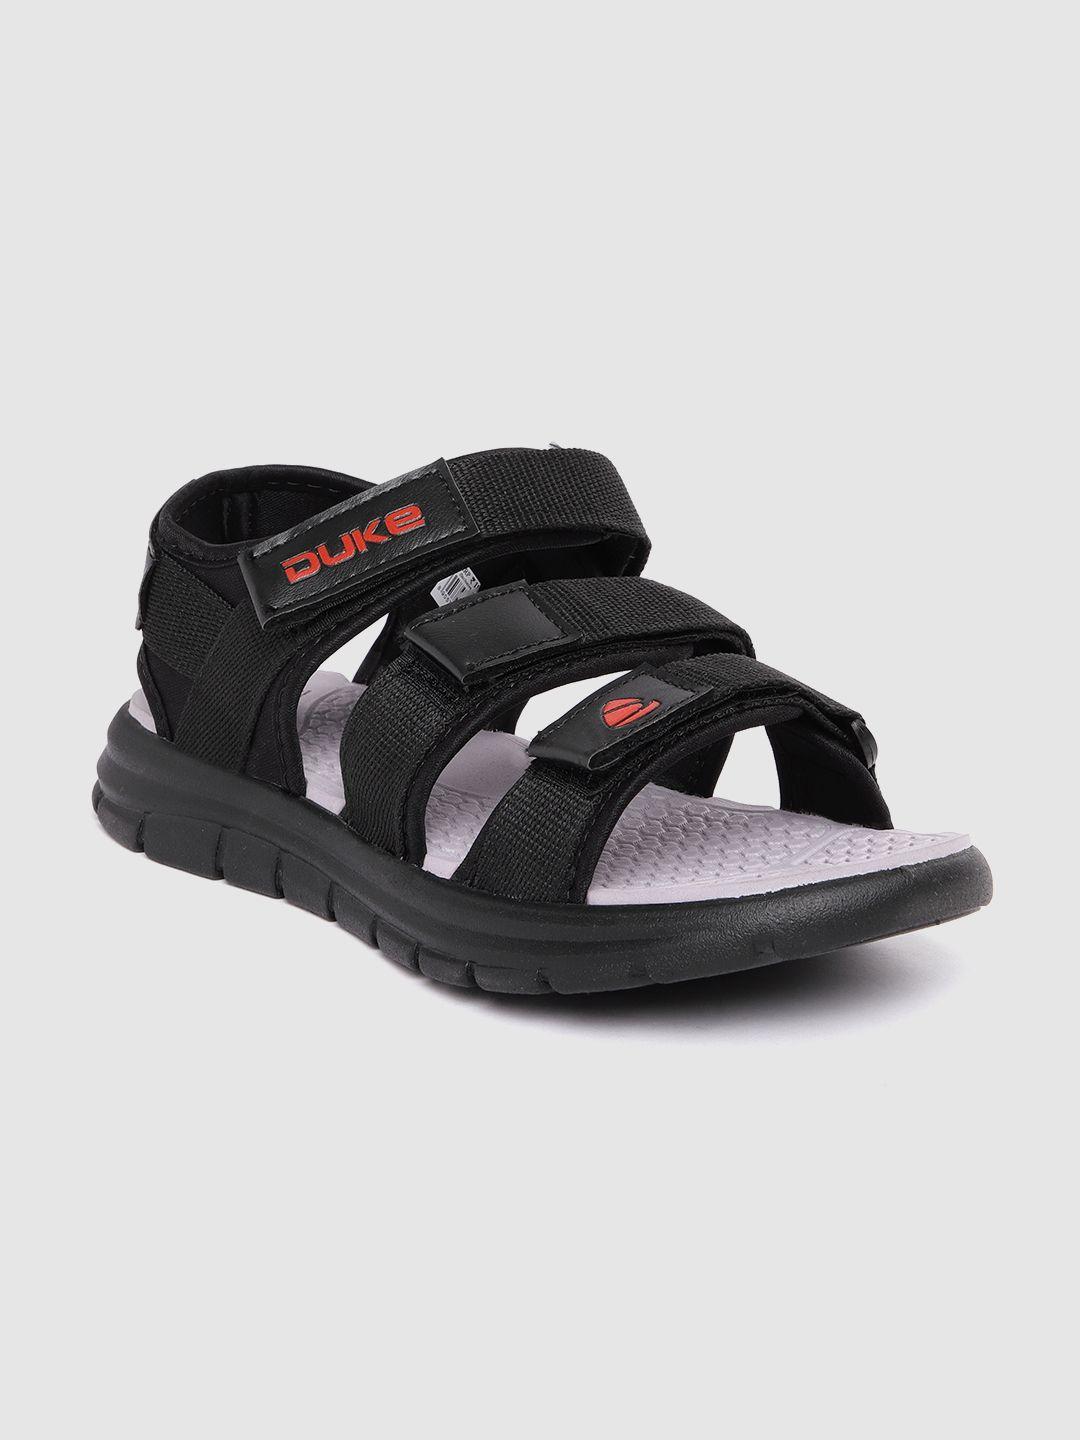 duke-men-woven-design-sports-sandals-with-brand-logo-detail